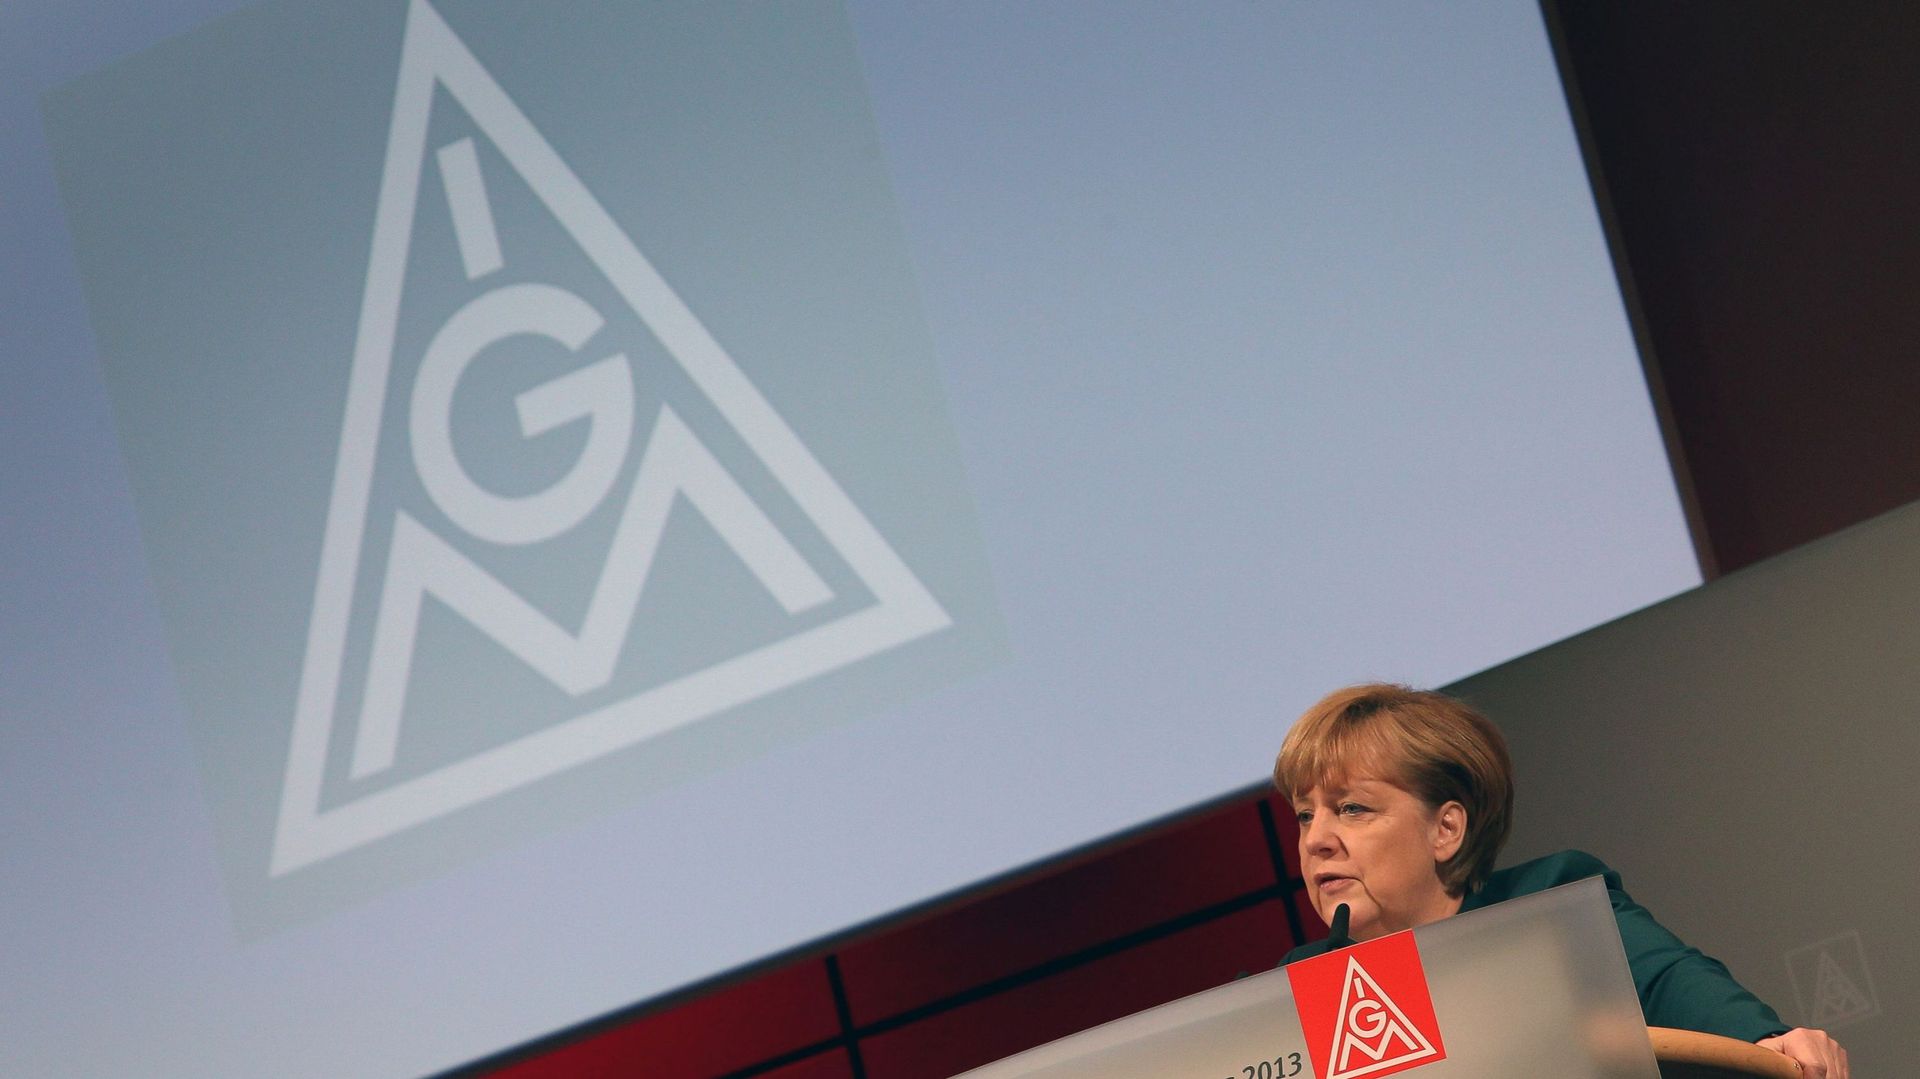 Le puissant syndicat allemand IG Metall manifeste son soutien au gouvernement grec